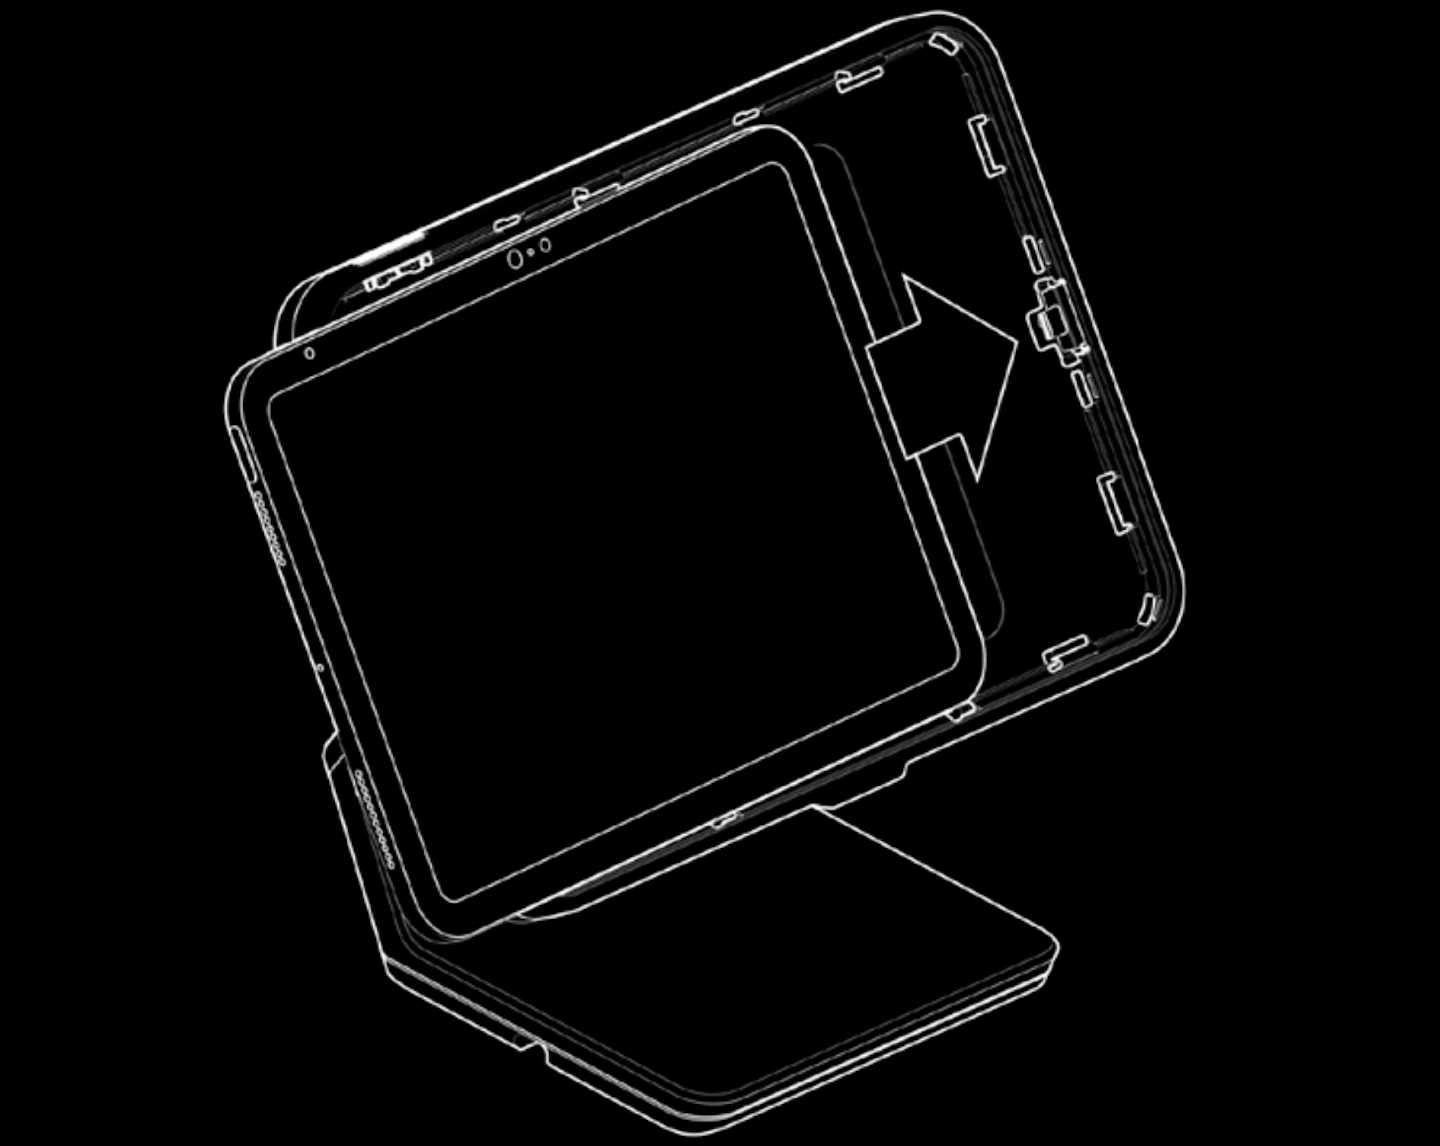 Afbeelding van een iPad die op de Lightspeed-standaard wordt geplaatst. Met een pijl wordt aangegeven dat de iPad naar rechts in de standaard wordt geschoven.